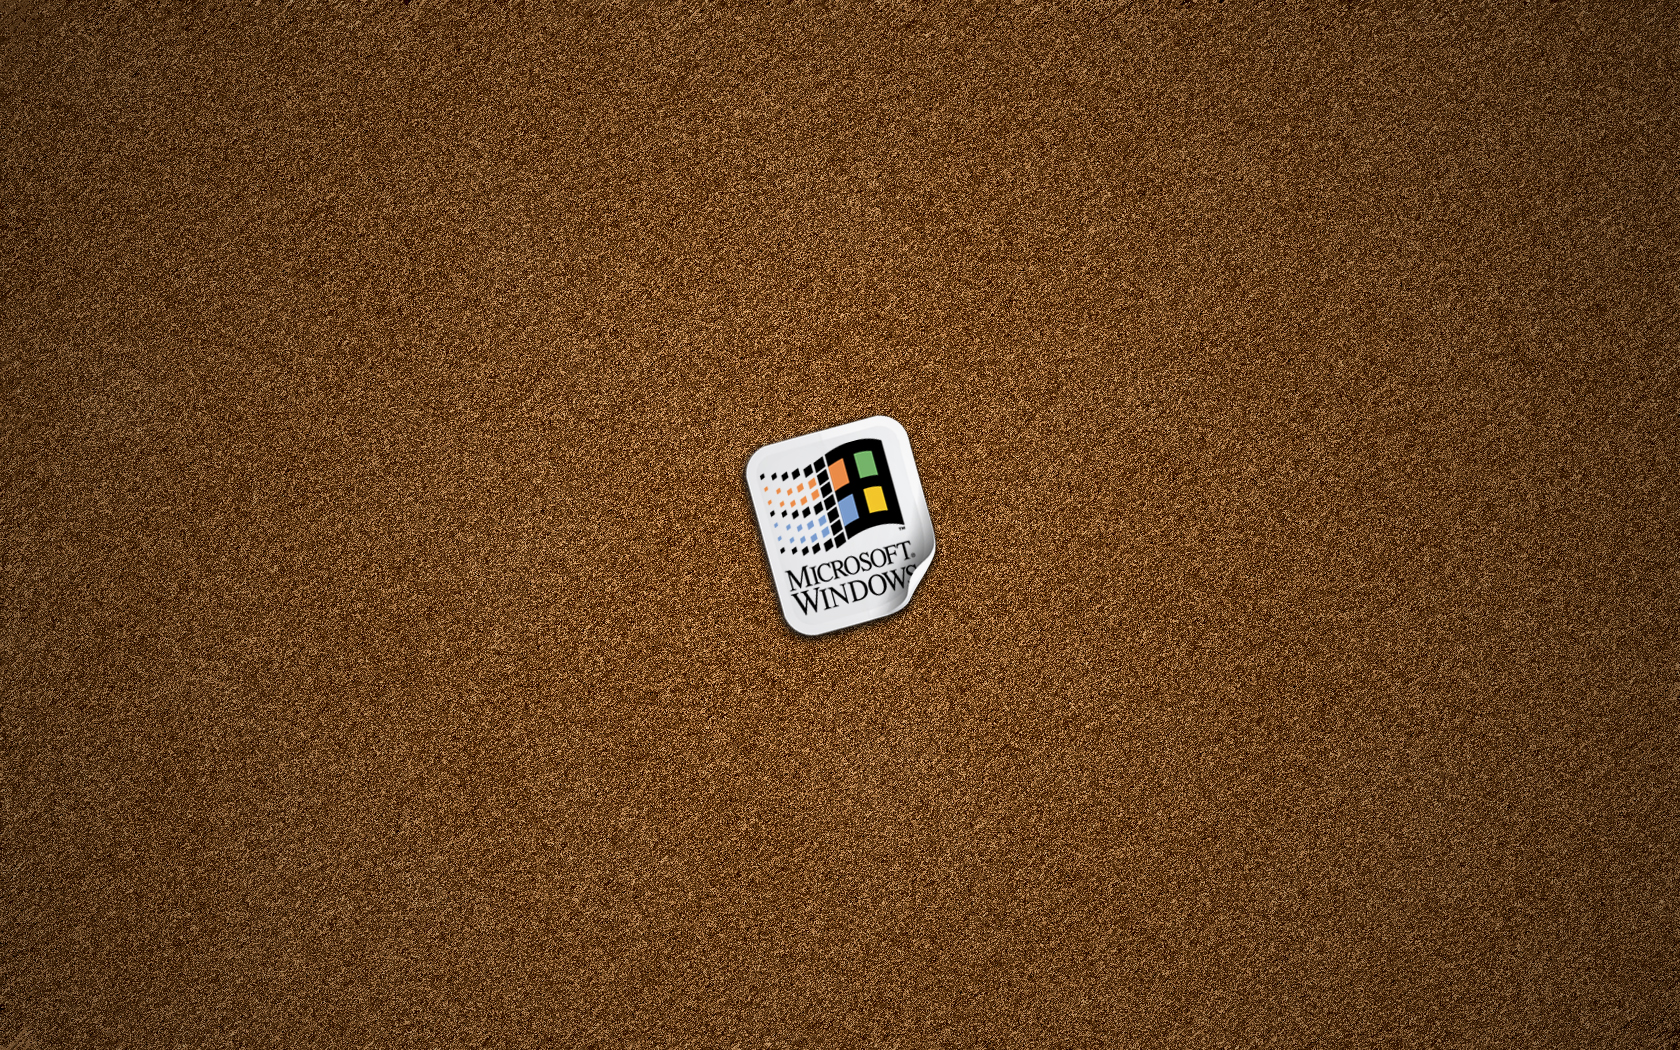 Windows Sticker On Cork Board Jpg